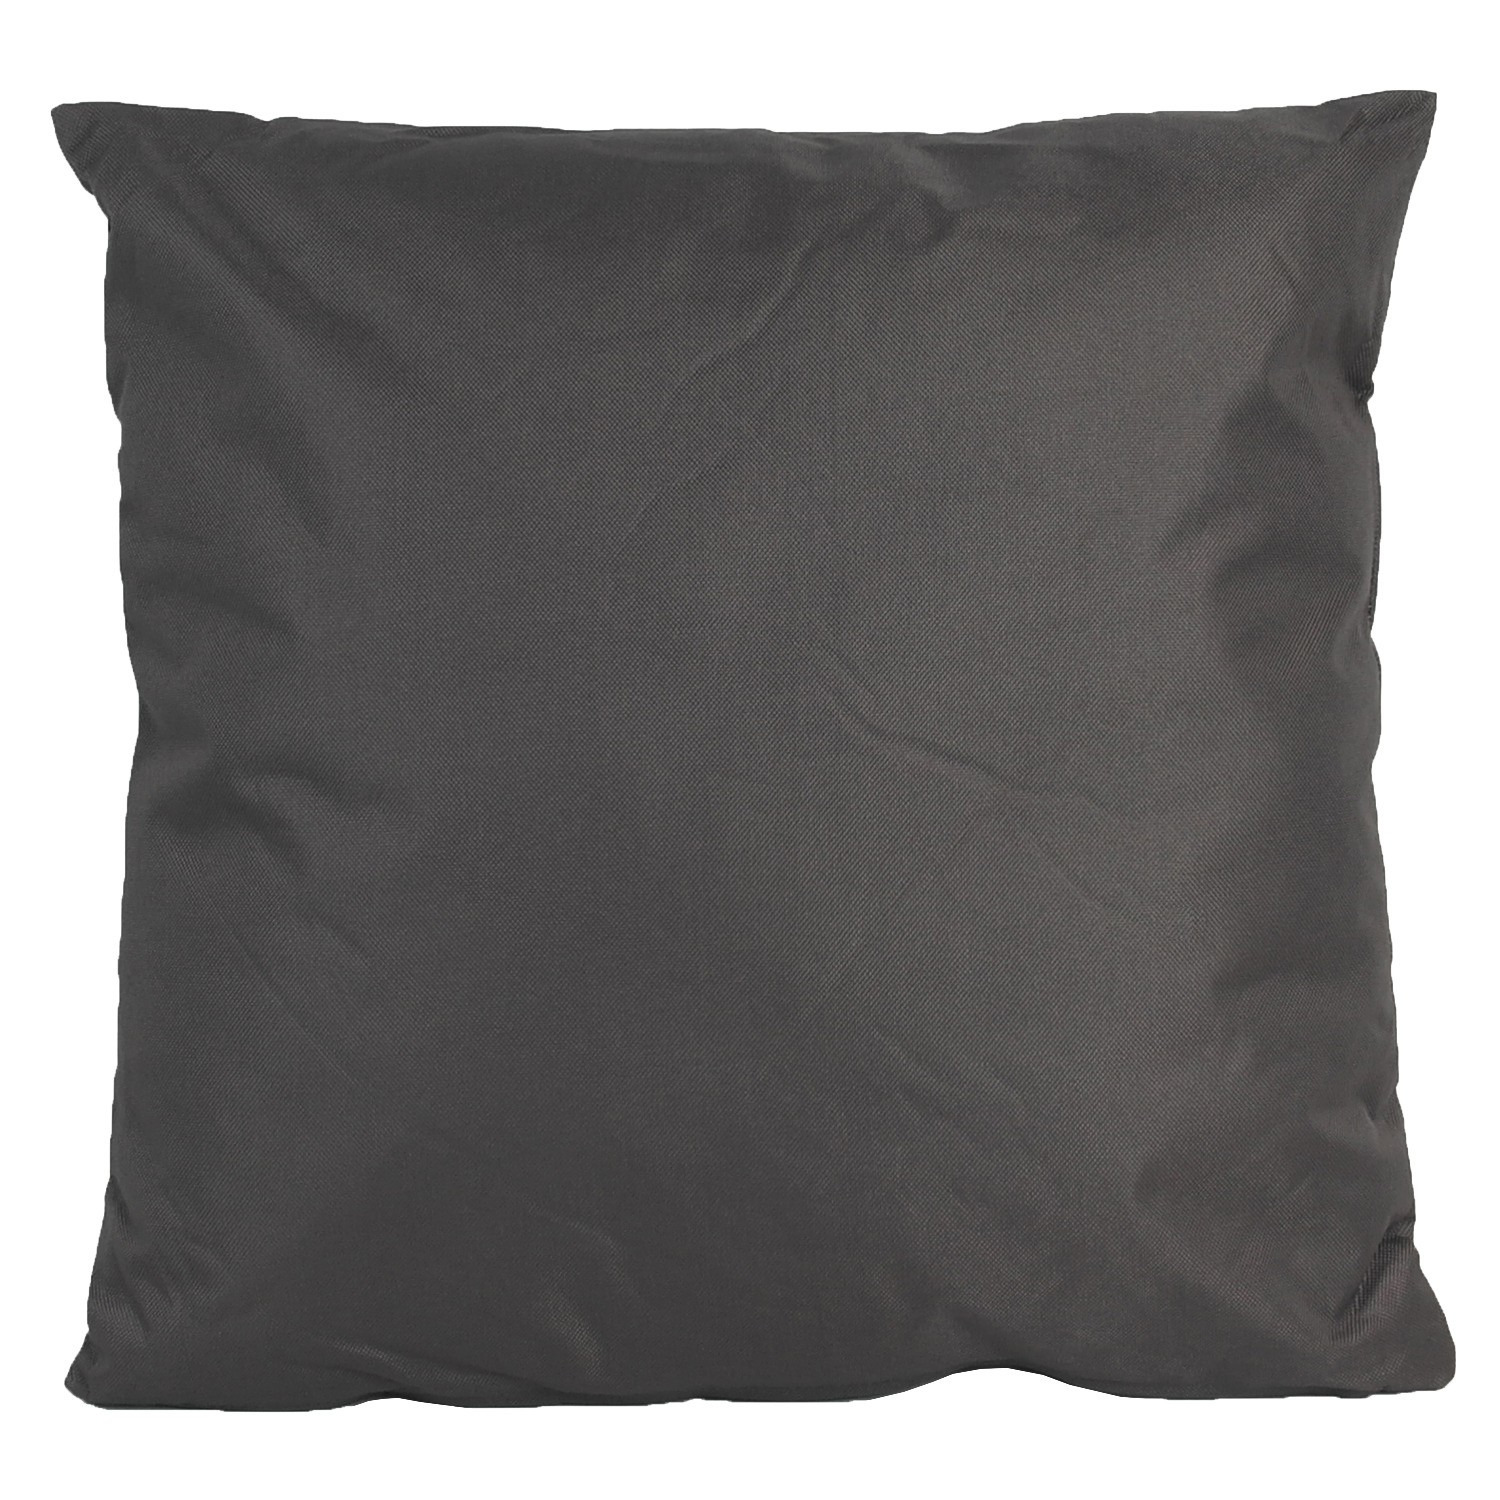 1x Bank-Sier kussens voor binnen en buiten in de kleur antraciet grijs 45 x 45 cm